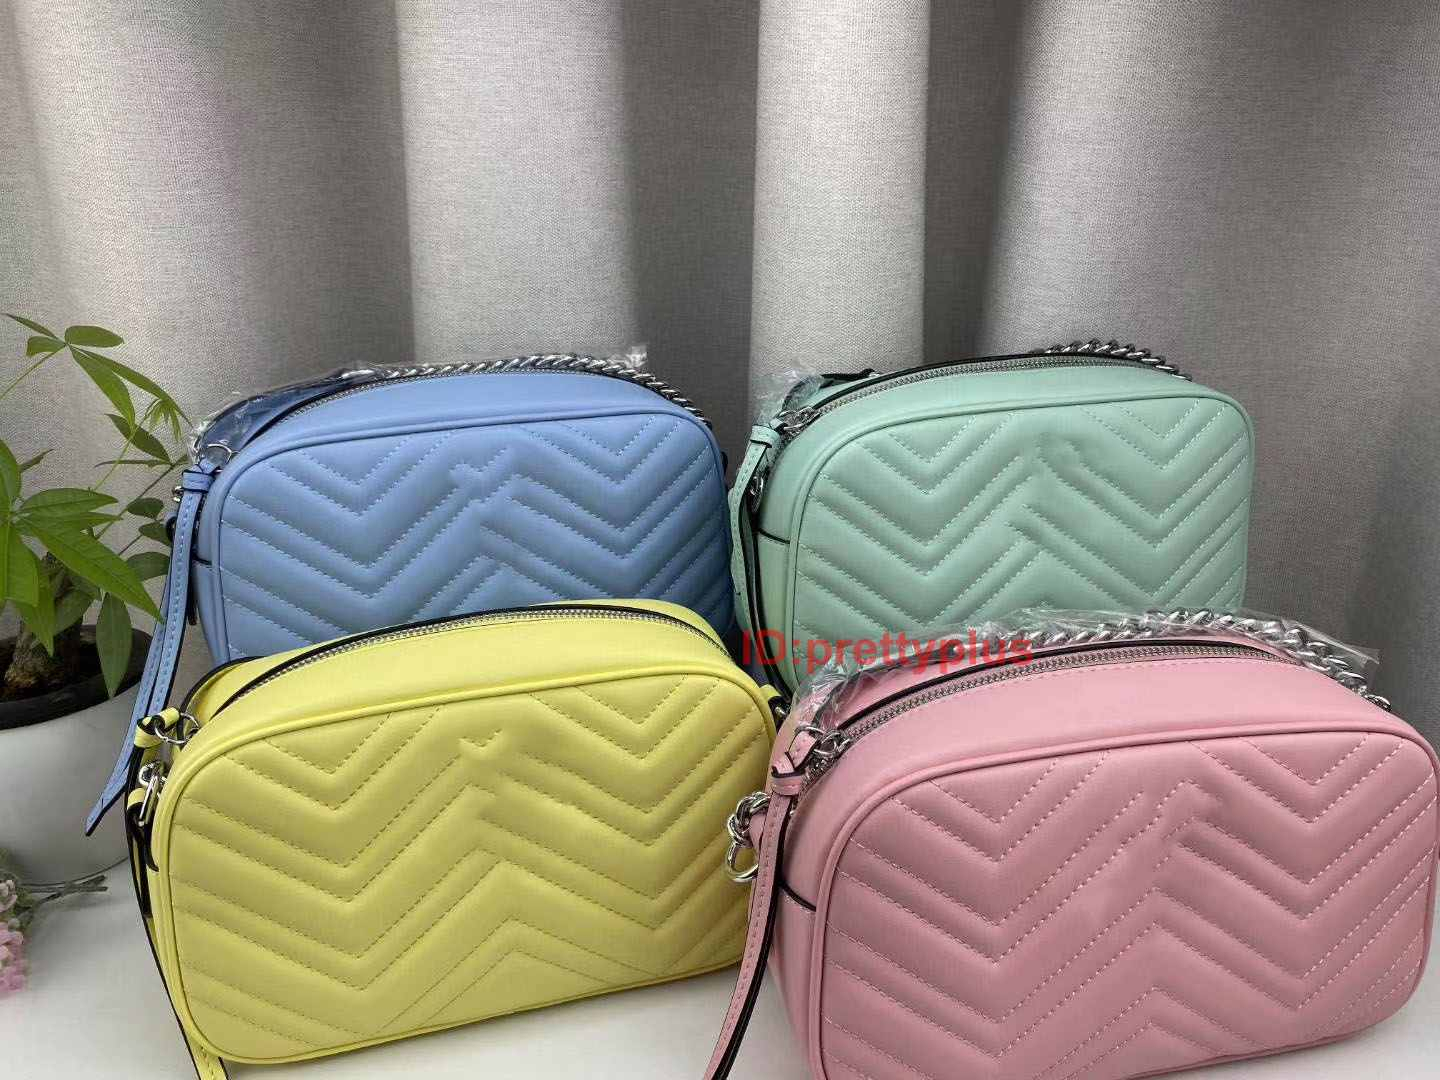 

High Quality Brand Marca Dragon Series Women Handbag Famous Shoulder Bag Fashion Designer Luxury Handbags Purses Socialite Chains Handbags, Blue